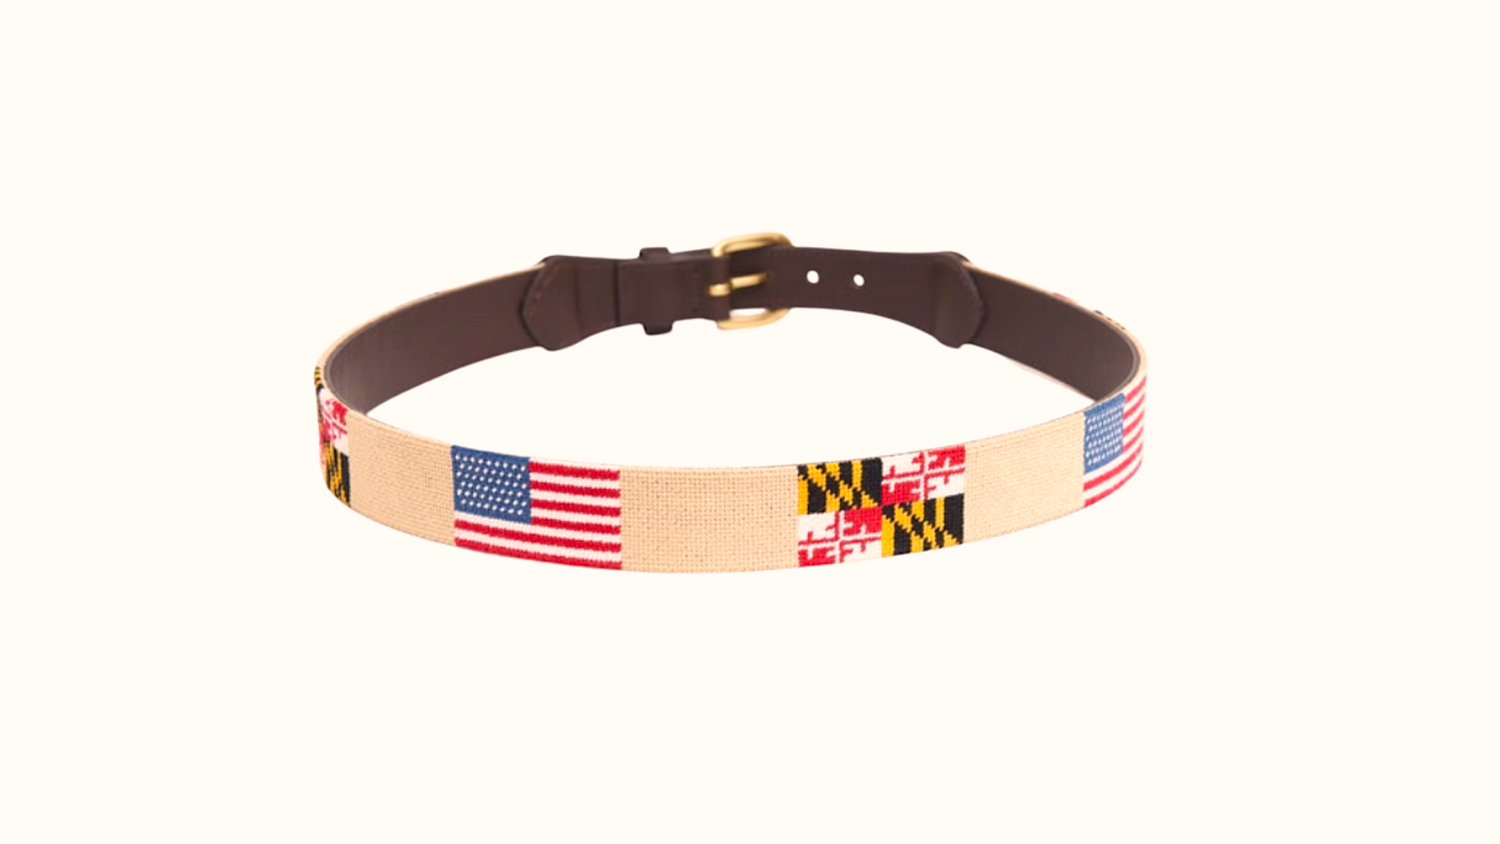 Needlepoint Belt- Maryland flag Needlepoint design